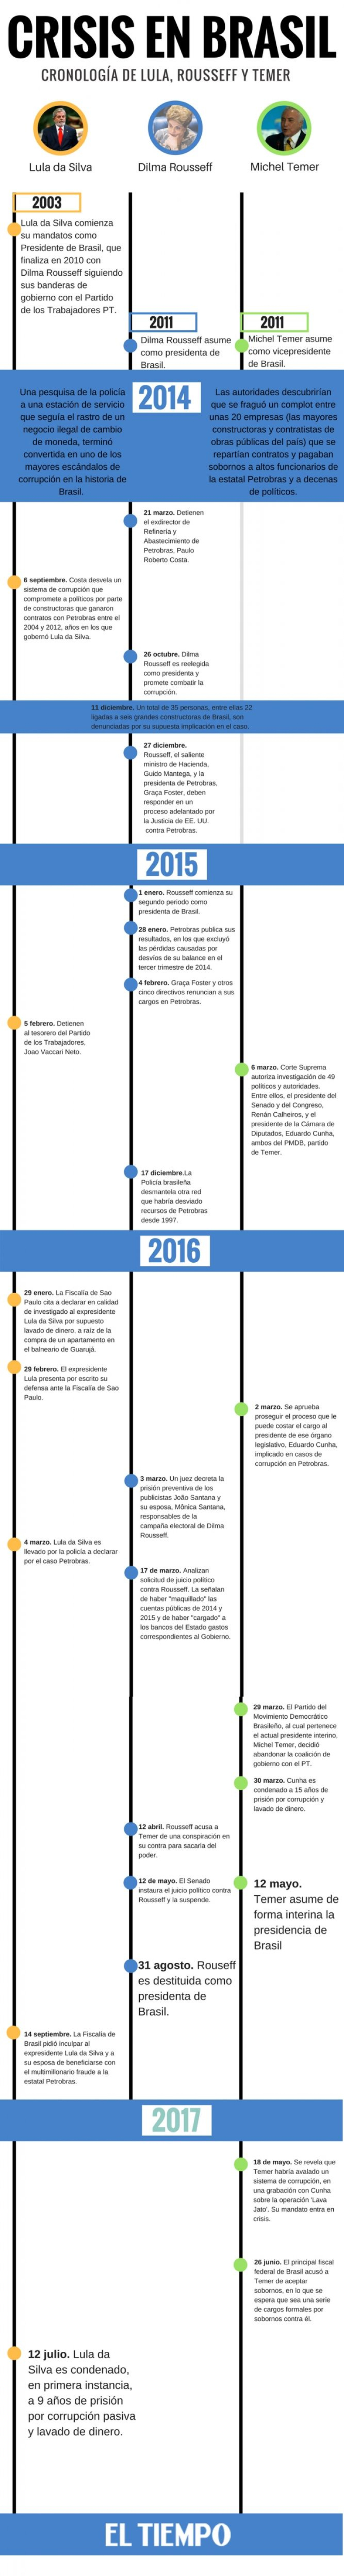 Cronología de los gobiernos de Brasil